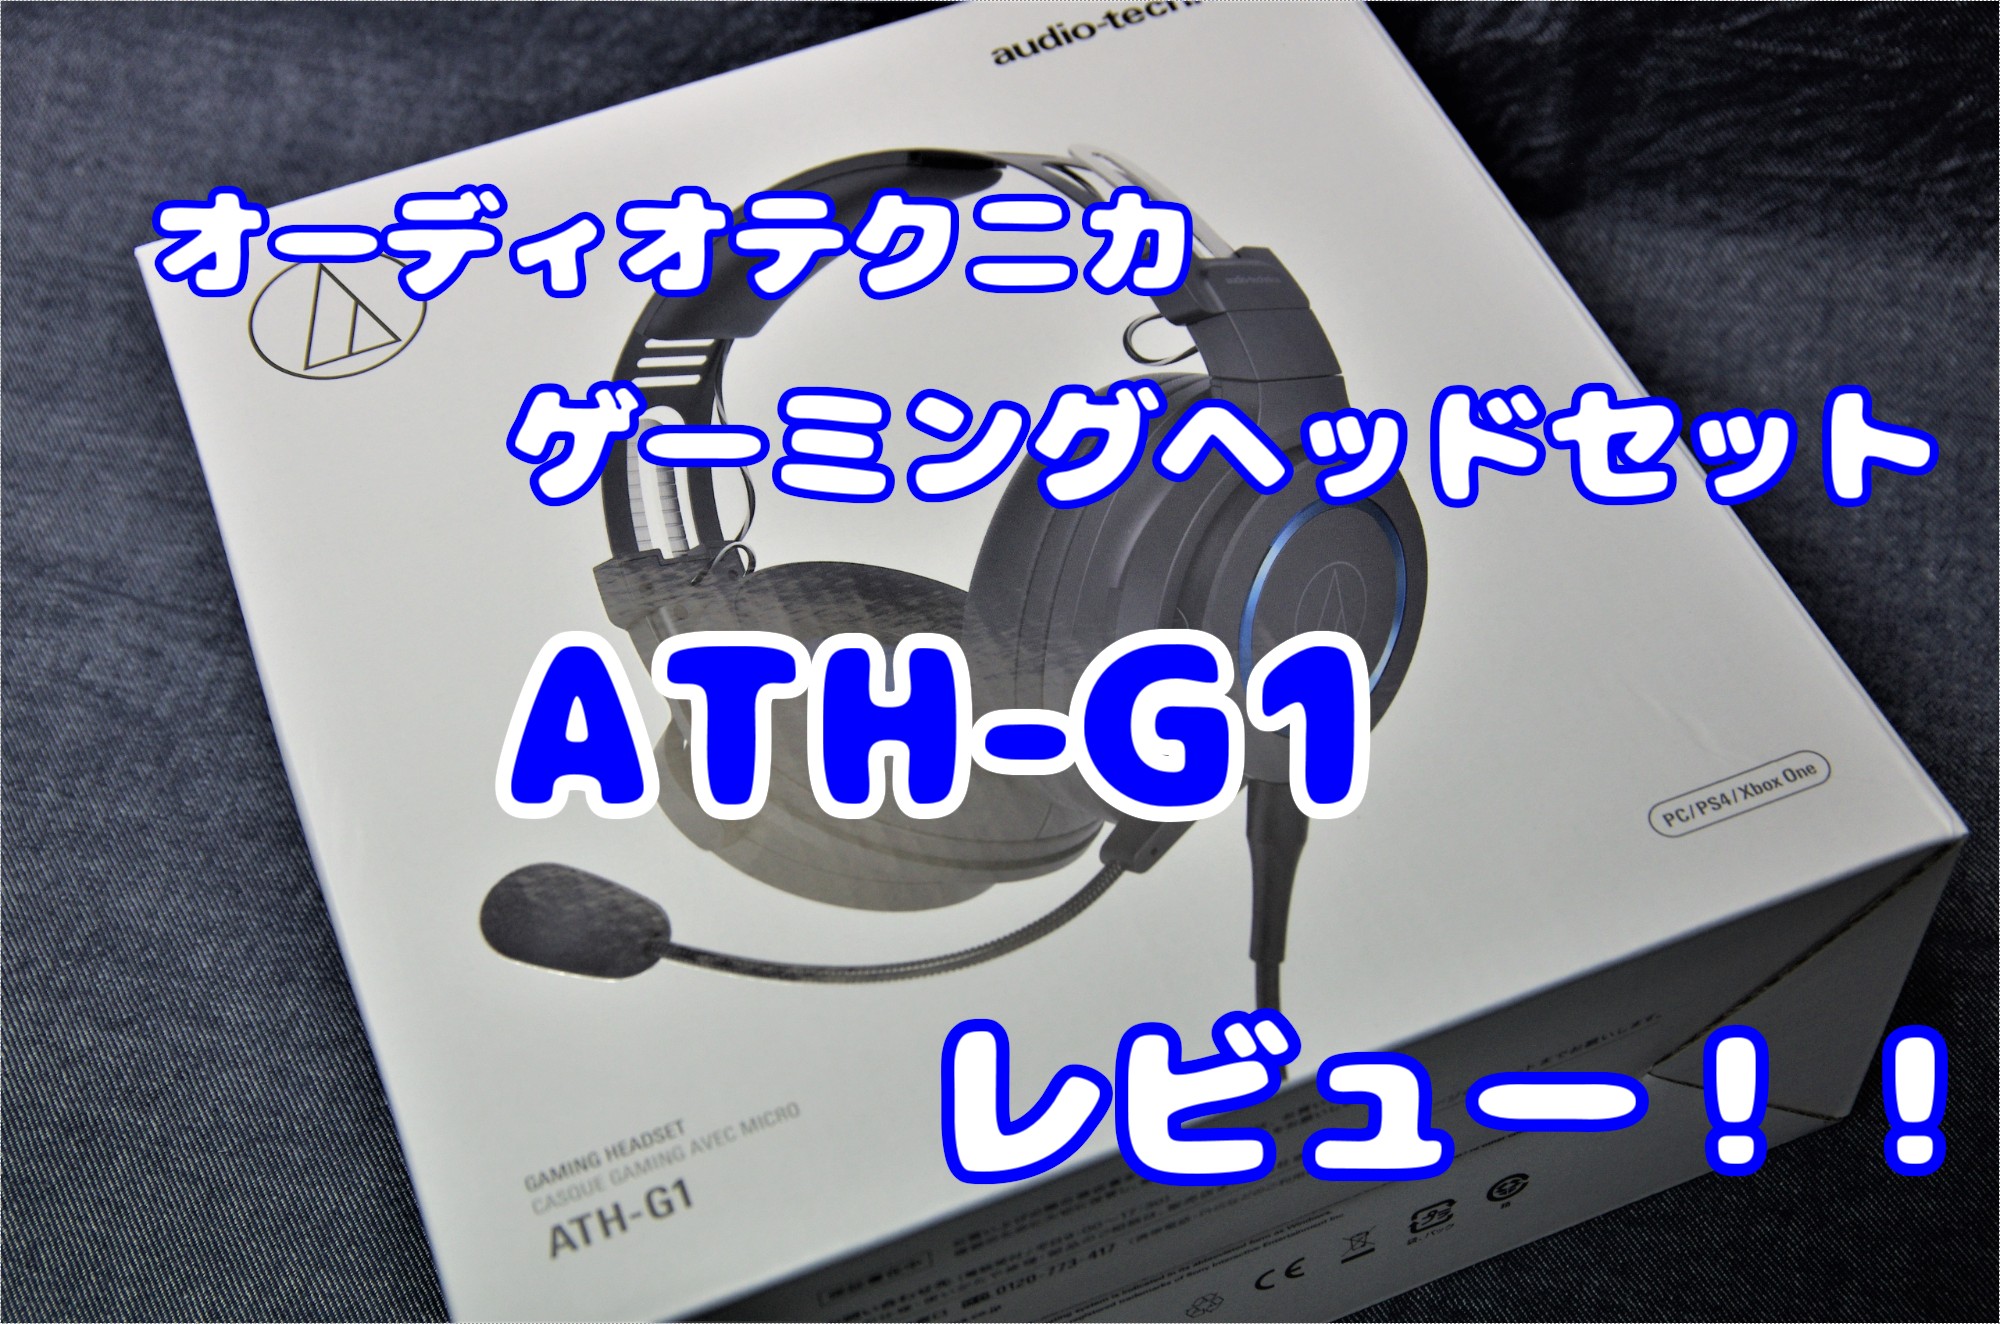 audio−technica ATH-G1 ディーエス様 予約済み - rehda.com